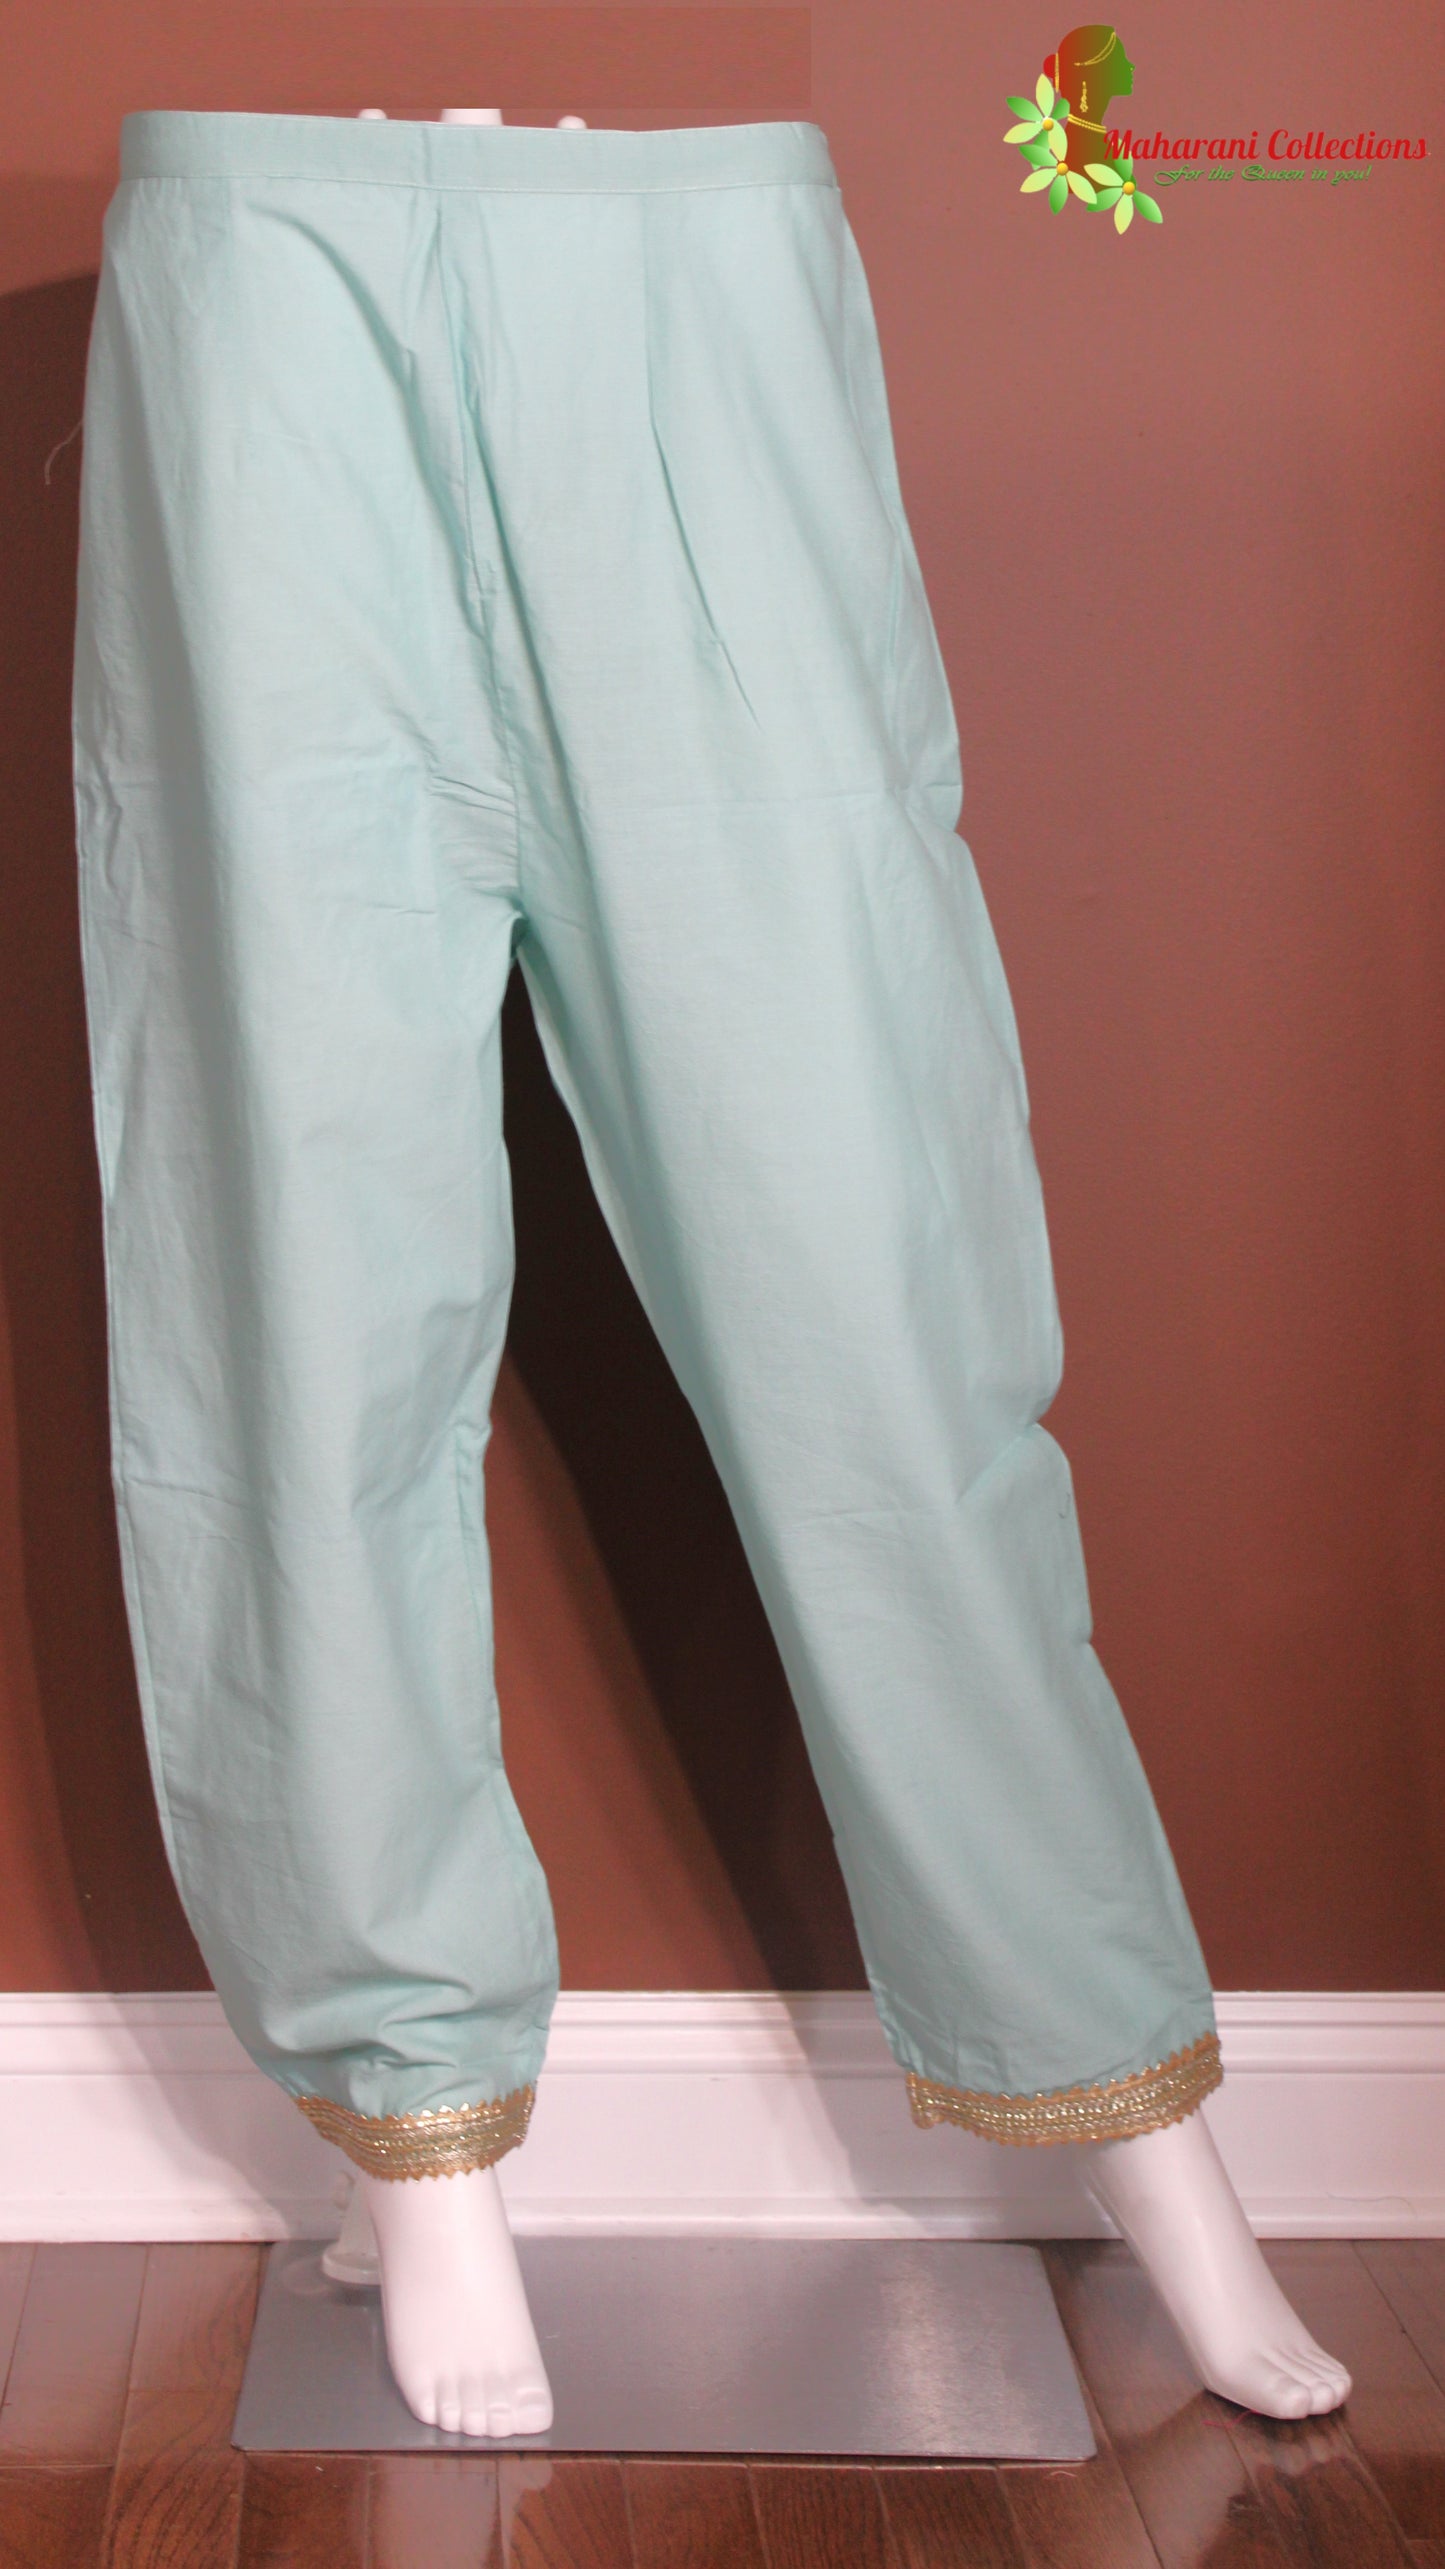 Maharani's Pant Suit - Soft Cotton - Mint (M, L)